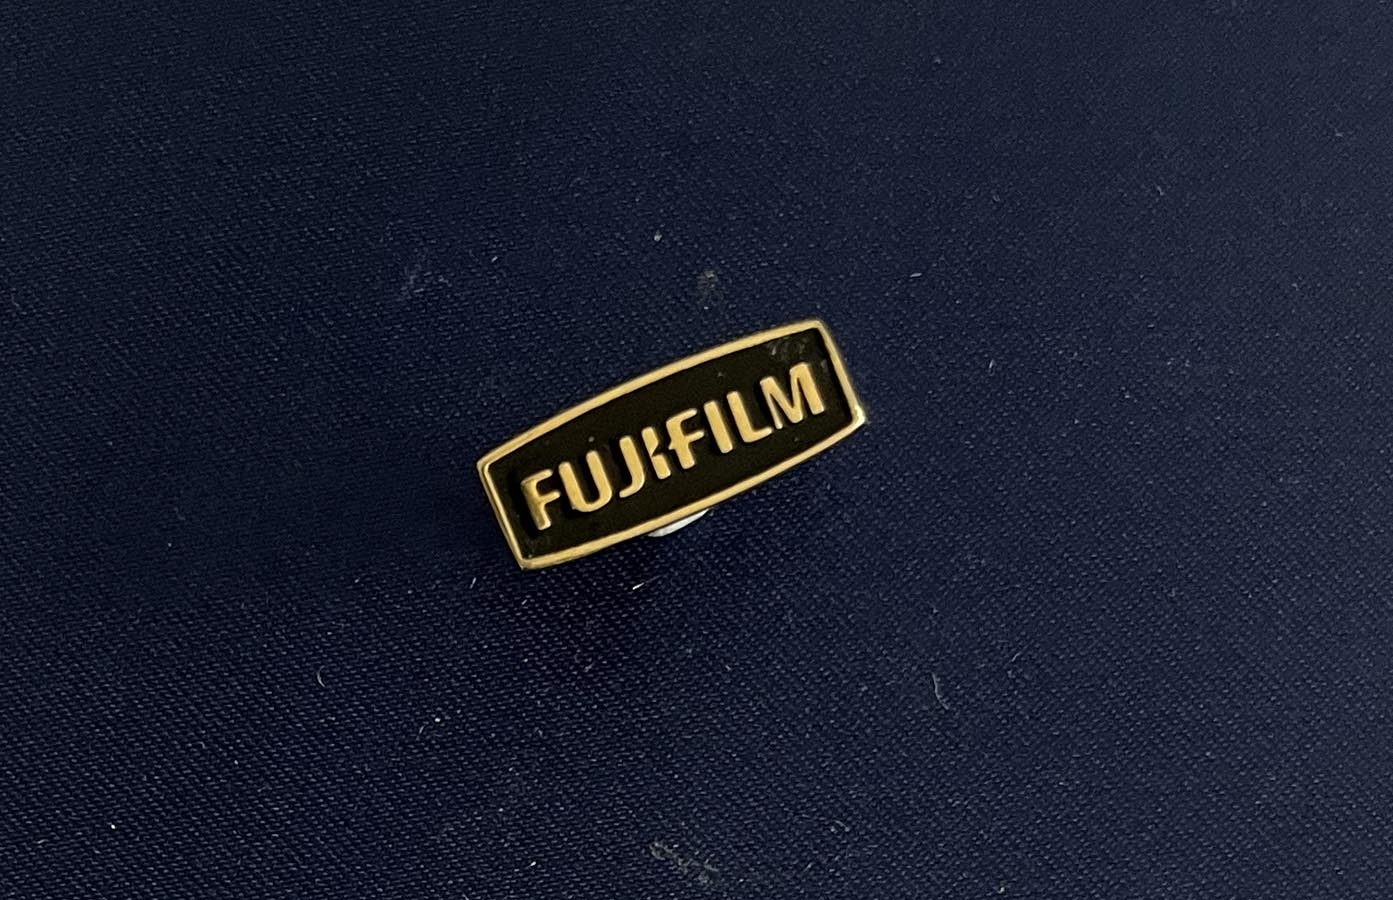 Fujifilm Lapel Pin